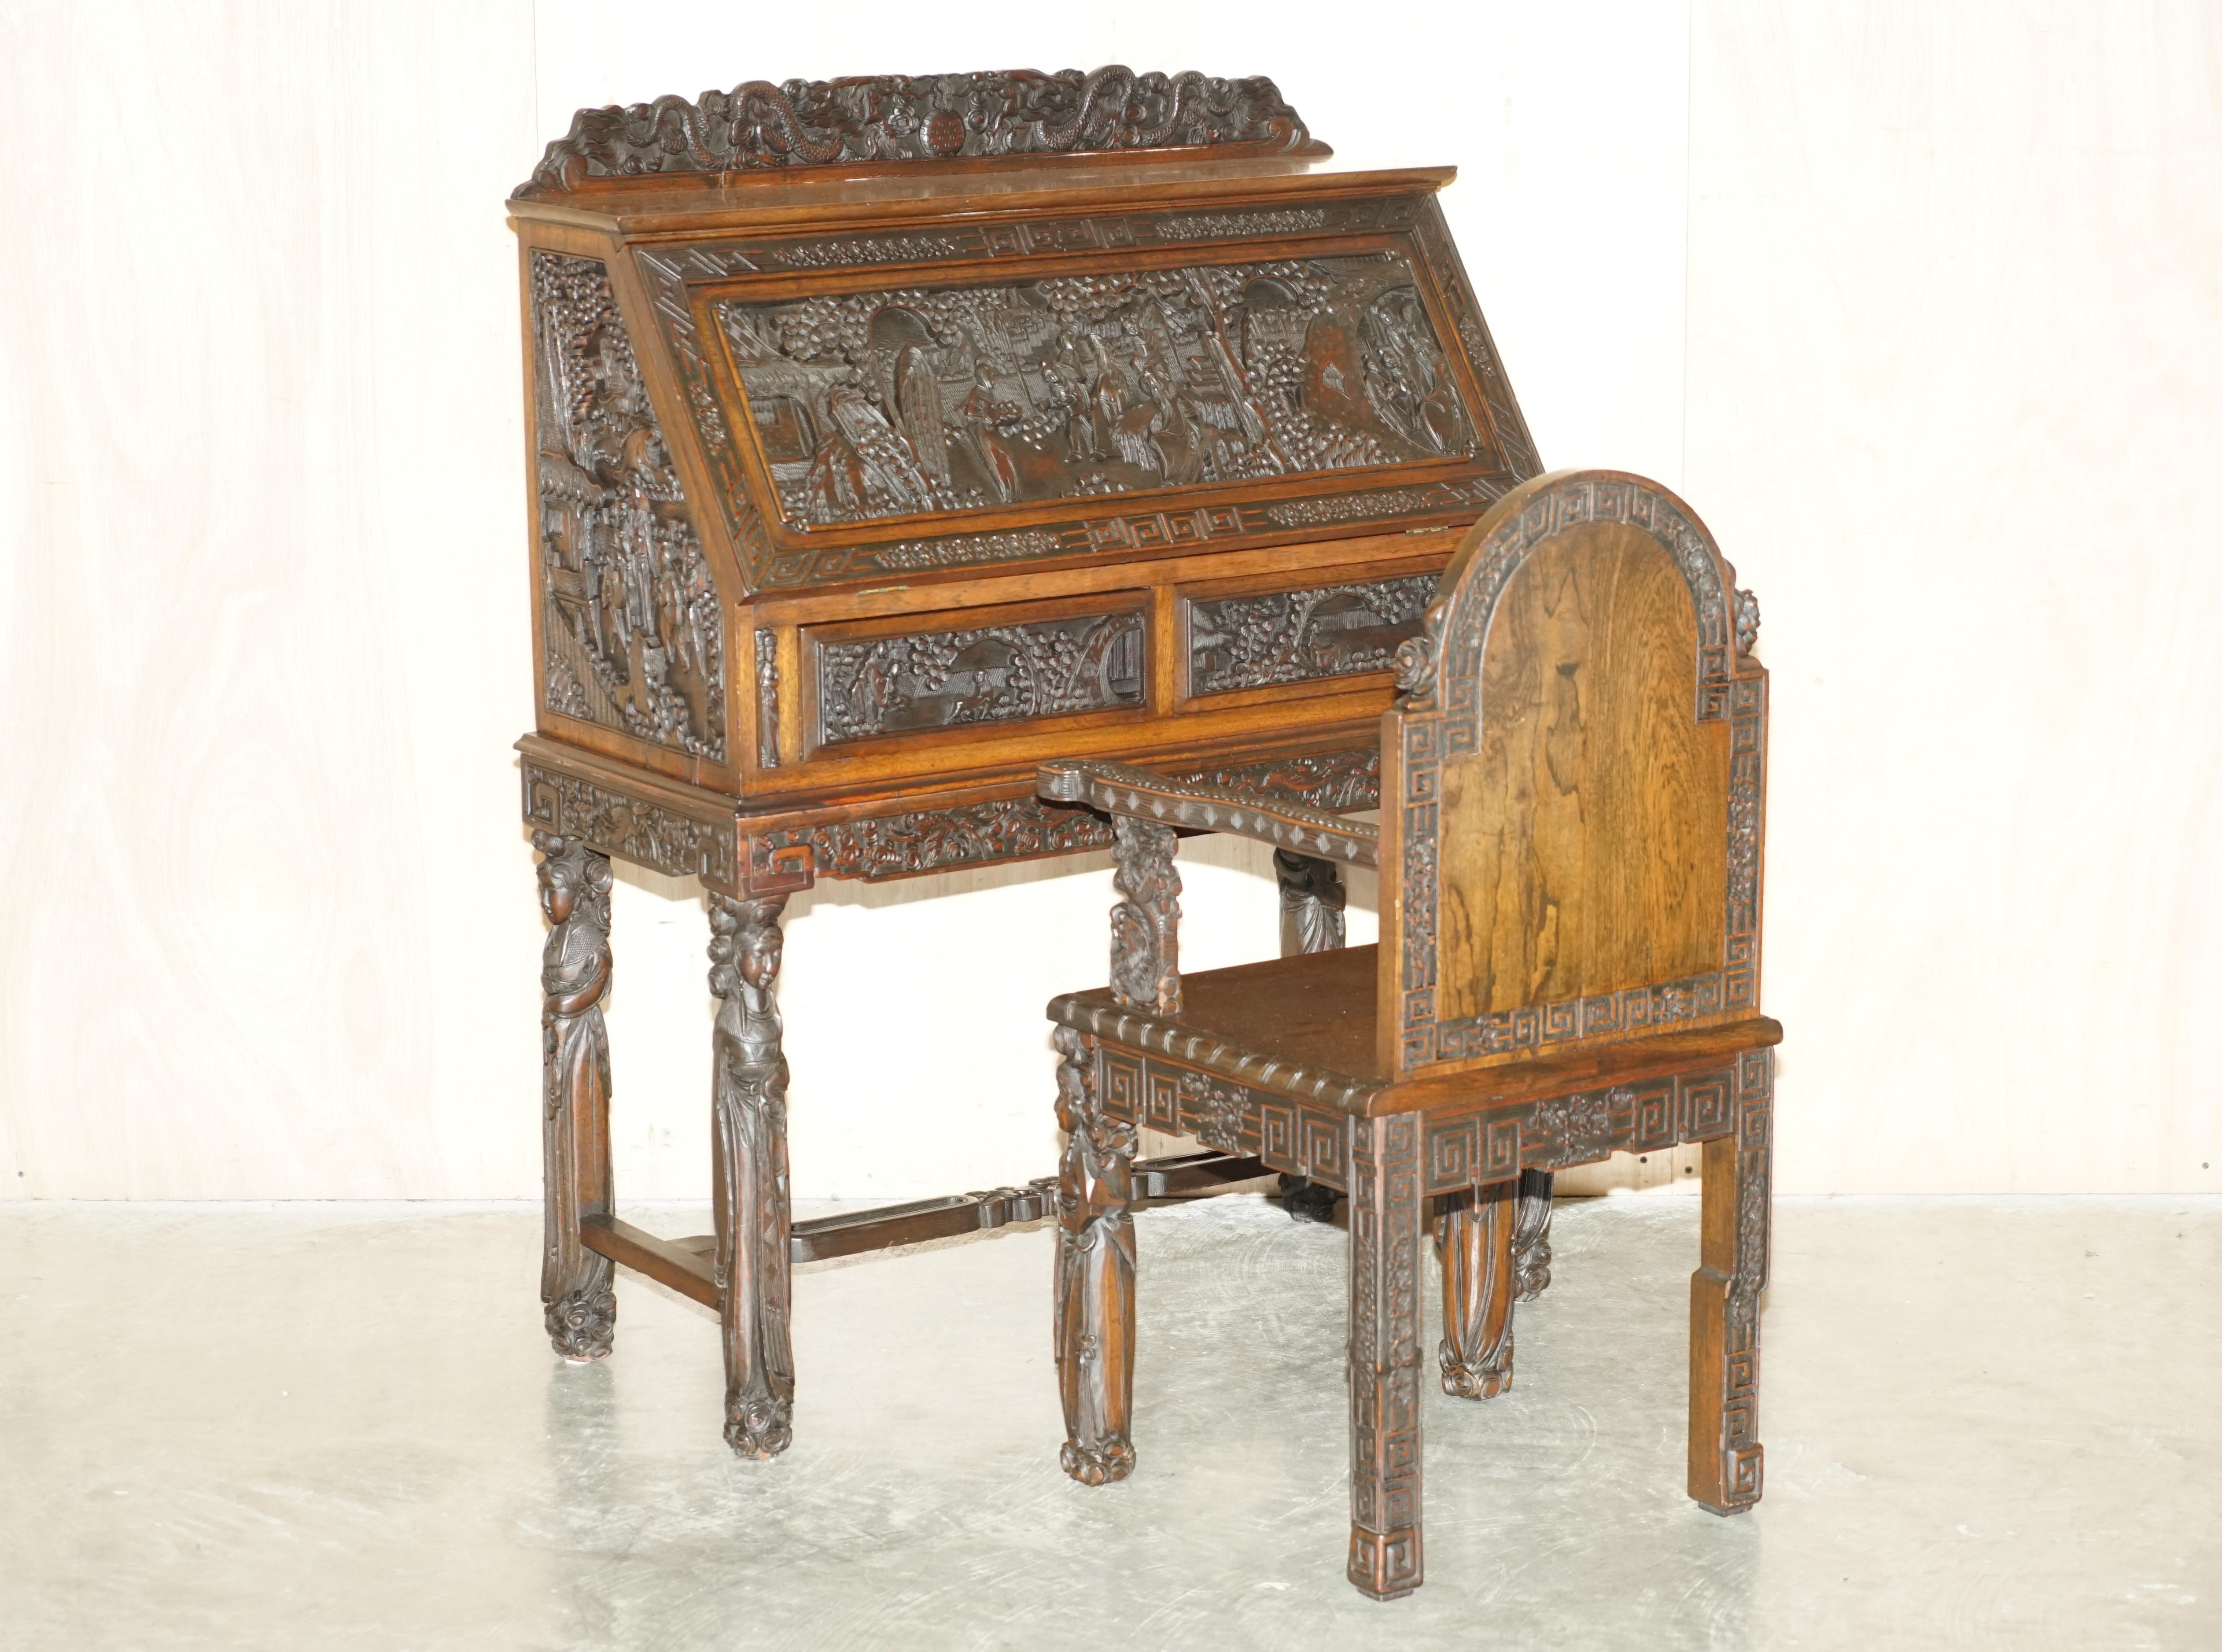 Royal House Antiques

Royal House Antiques freut sich, diesen atemberaubenden handgeschnitzten Bureau-Schreibtisch aus dem China-Export der 1940er Jahre mit passendem Sessel zum Verkauf anzubieten. 

Bitte beachten Sie die Liefergebühr aufgeführt